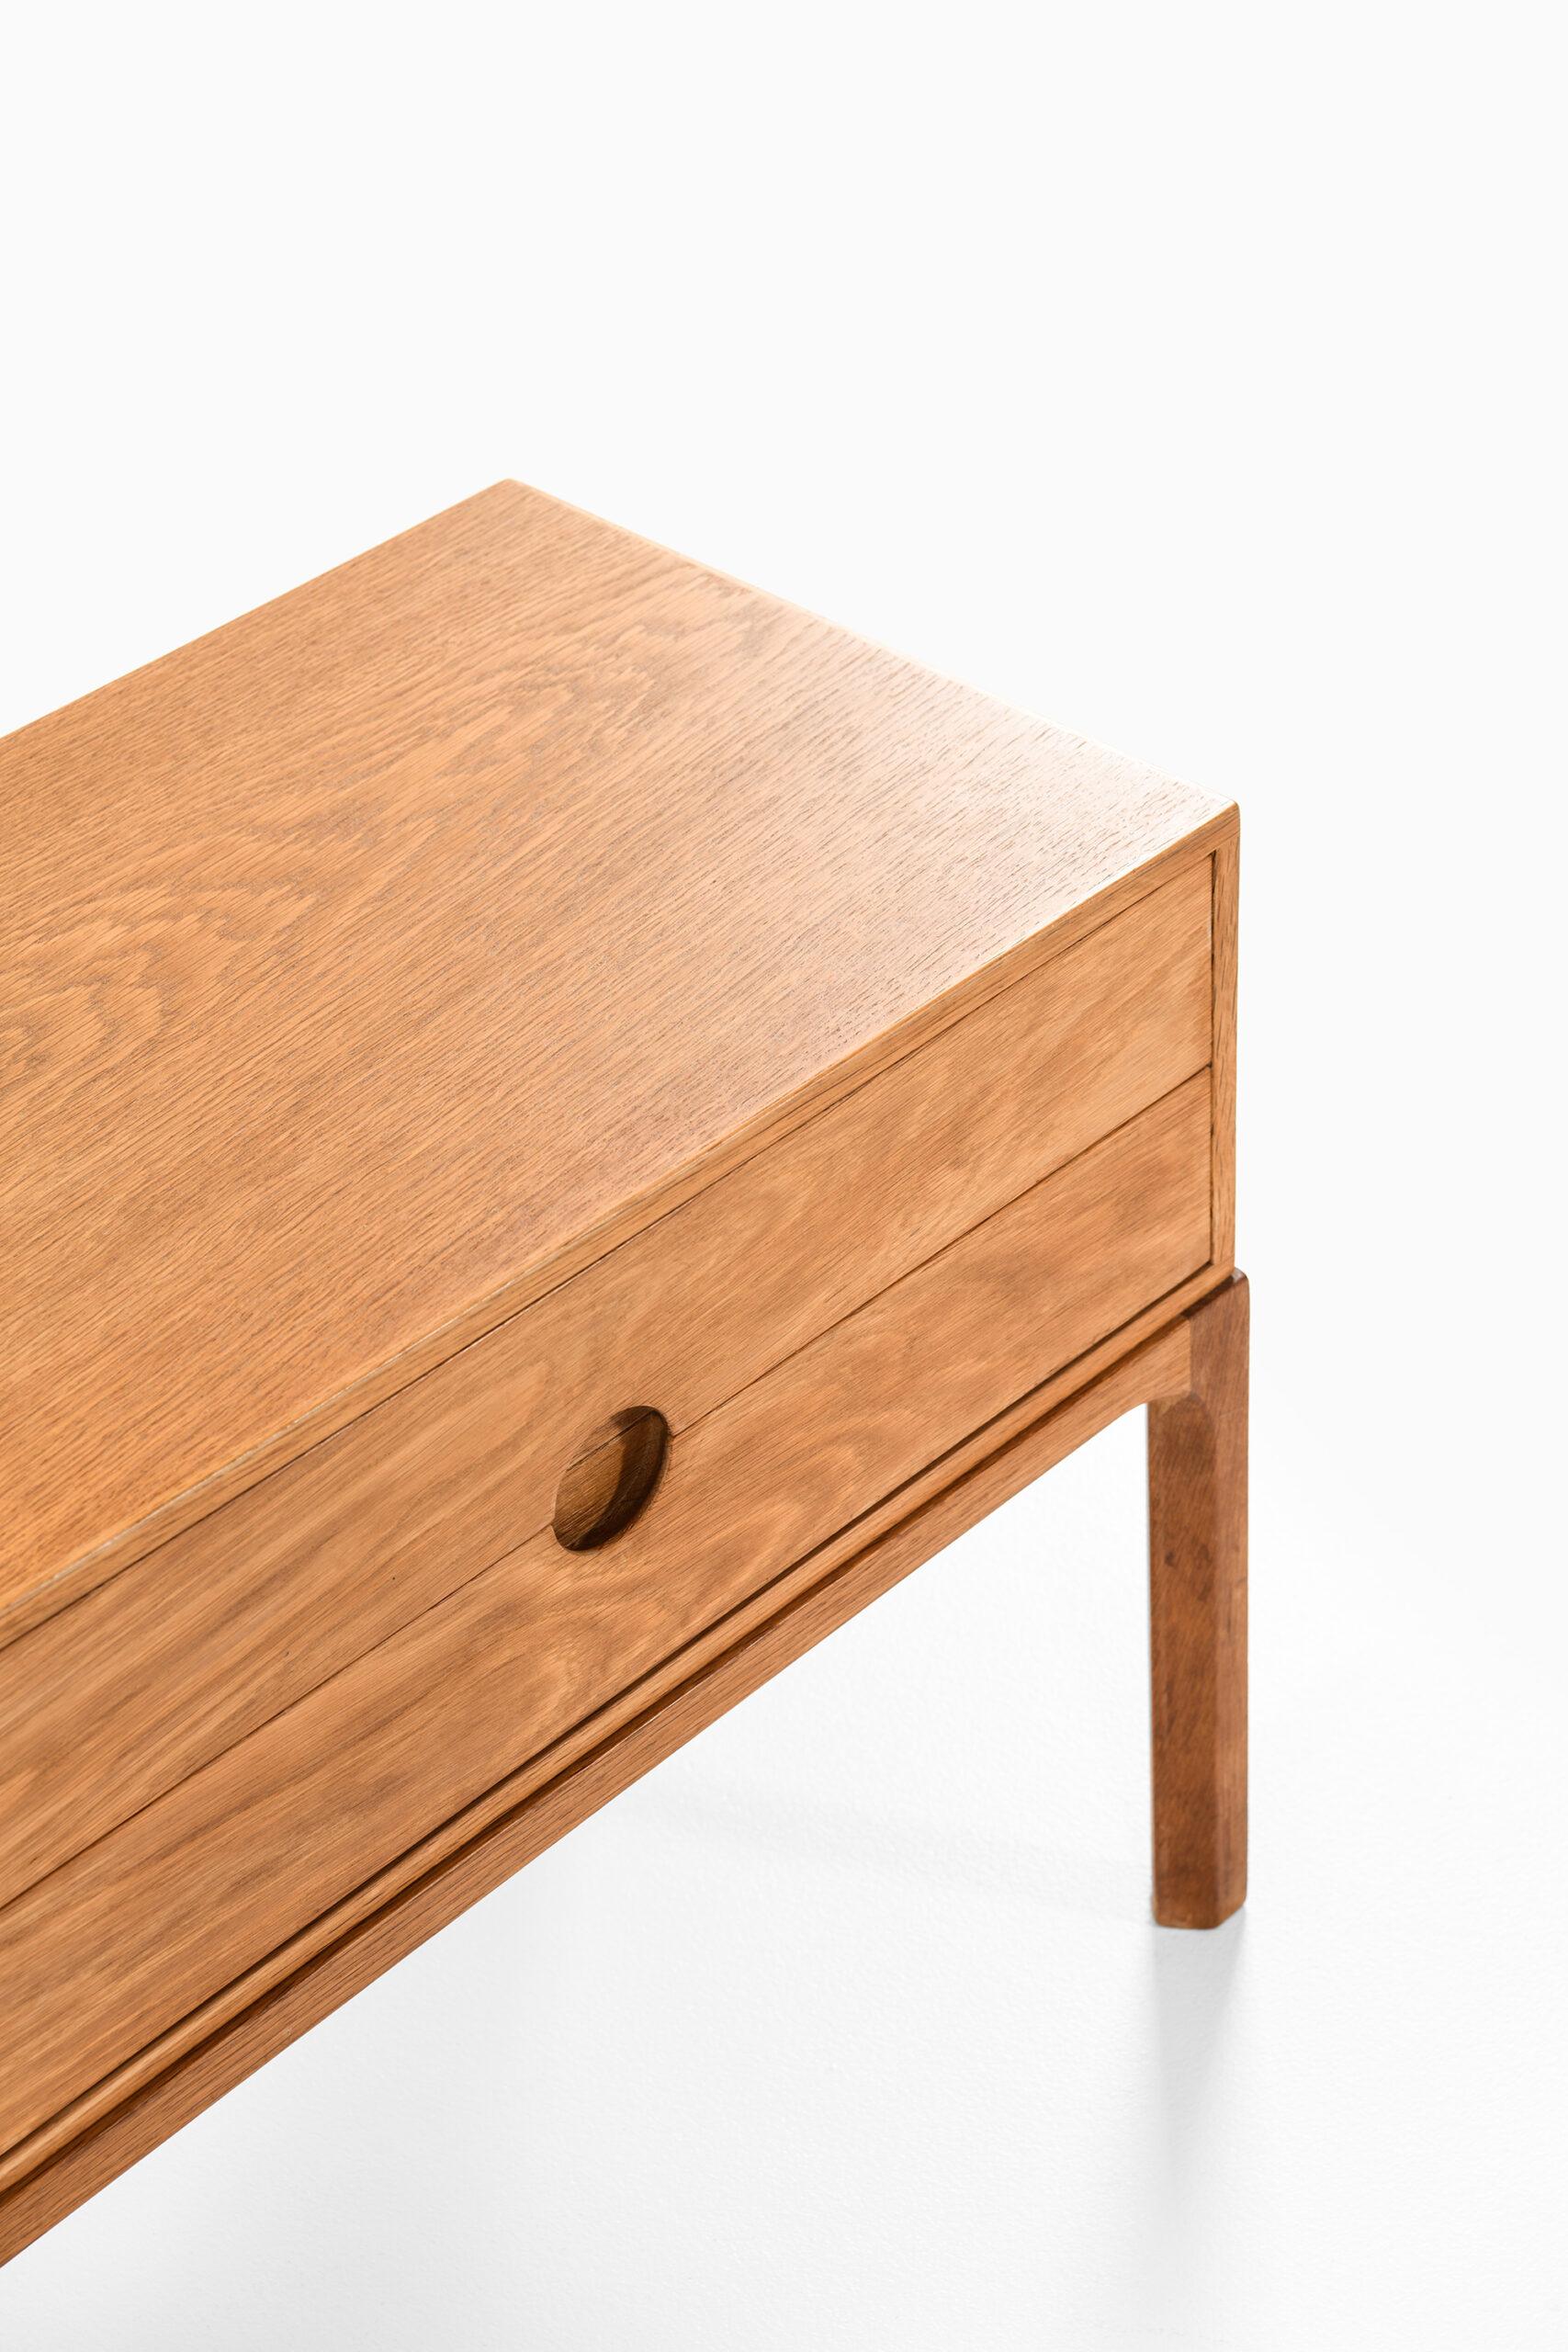 Bureau / side table model 394 designed by Kai Kristiansen. Produced by Aksel Kjersgaard in Denmark.